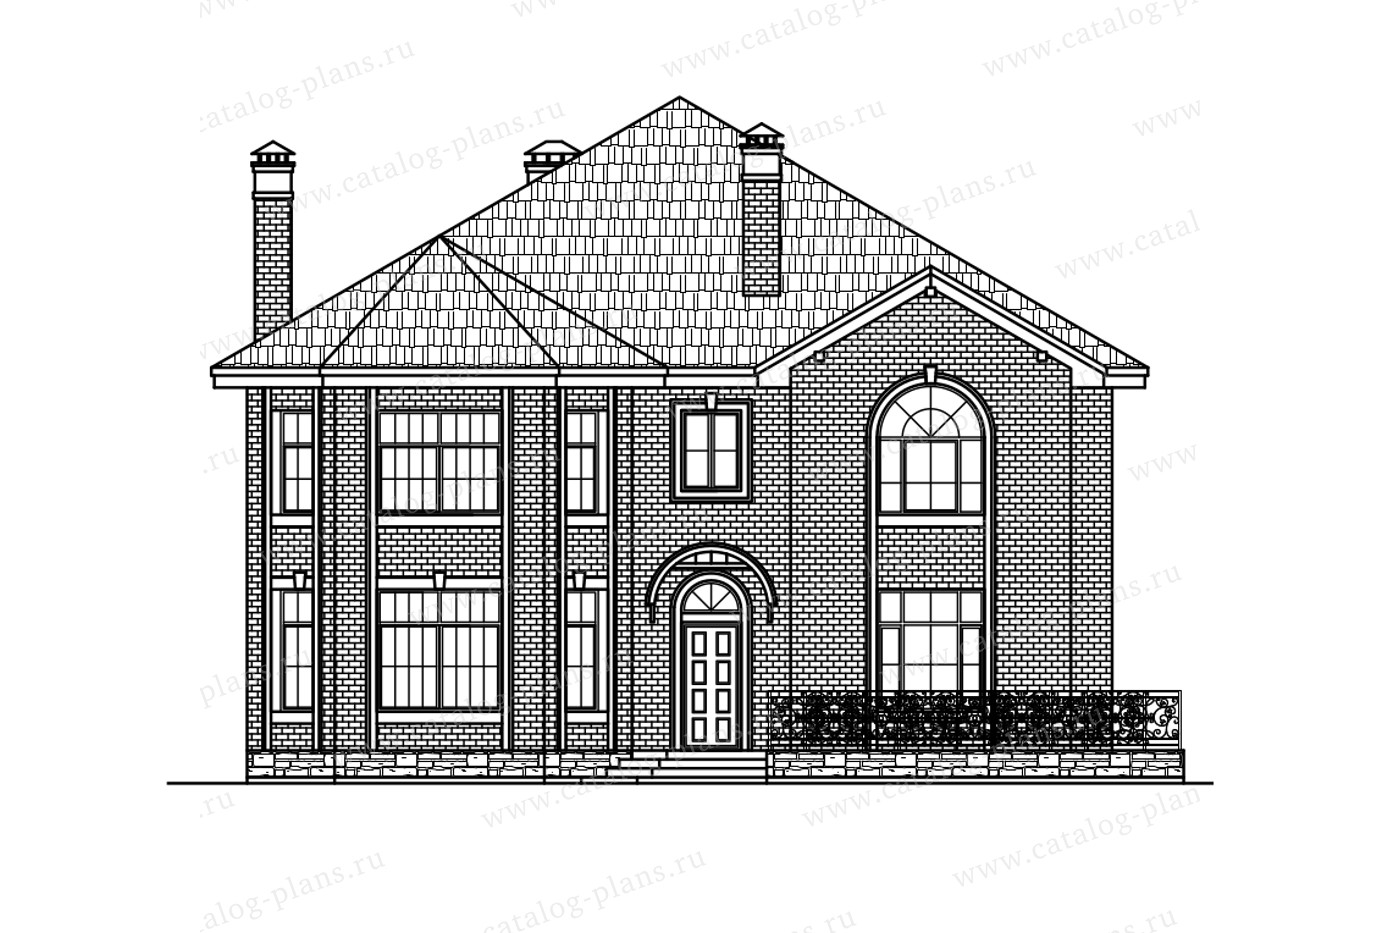 Проект 40-49D1L, жилой дом, материал - поризованный керамический блок 380, количество этажей - 2, архитектурный стиль - современный, фундамент - монолитная ж/б плита